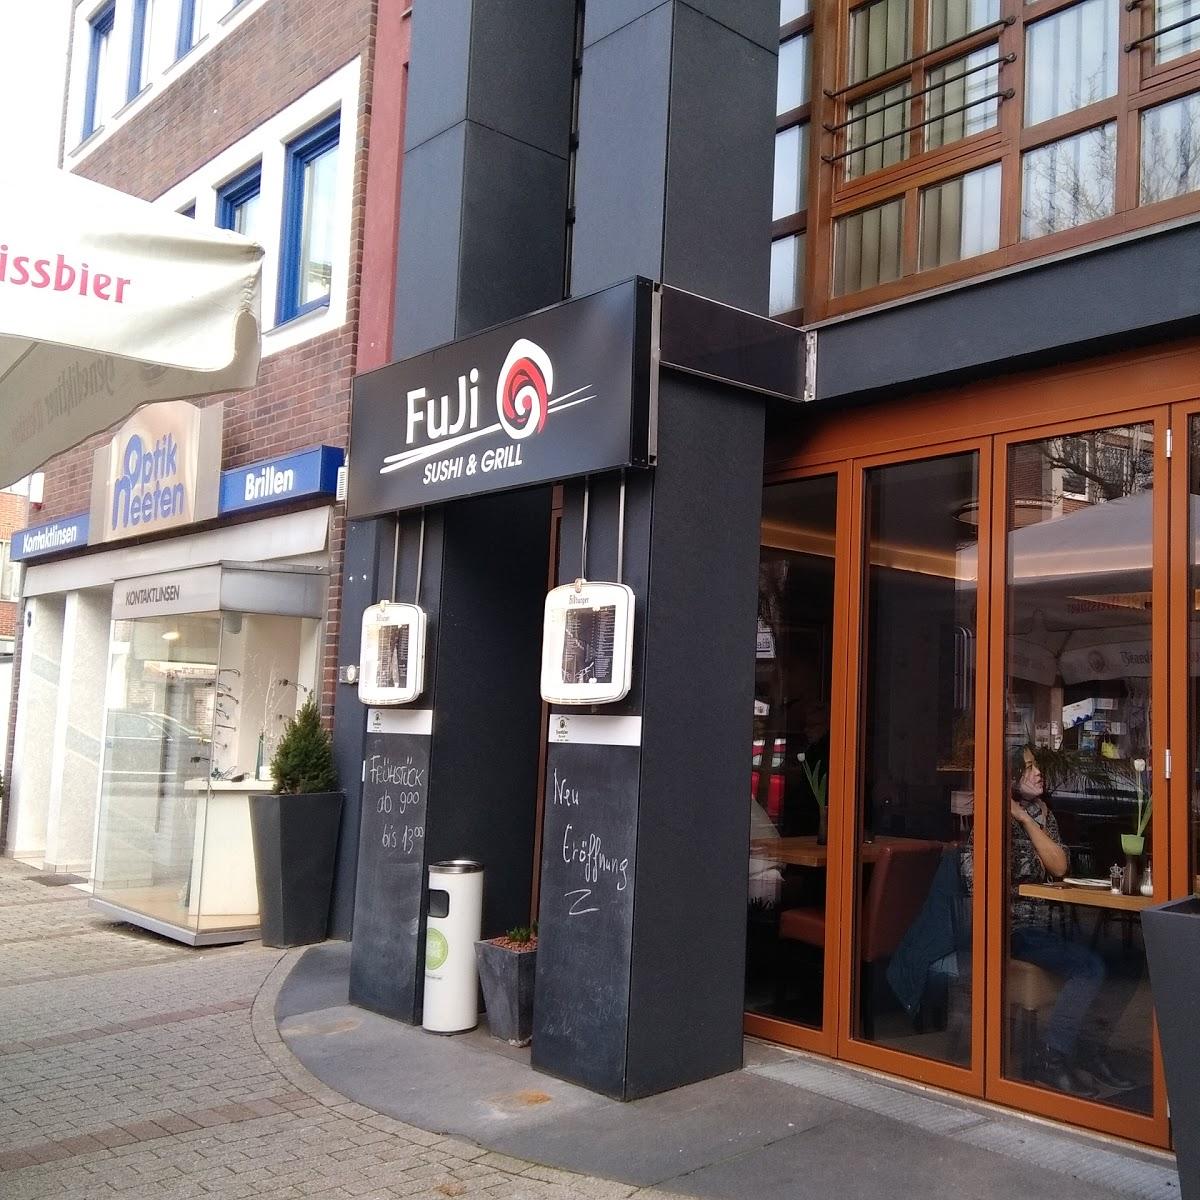 Restaurant "Fuji Sushi & Grill" in  Mönchengladbach